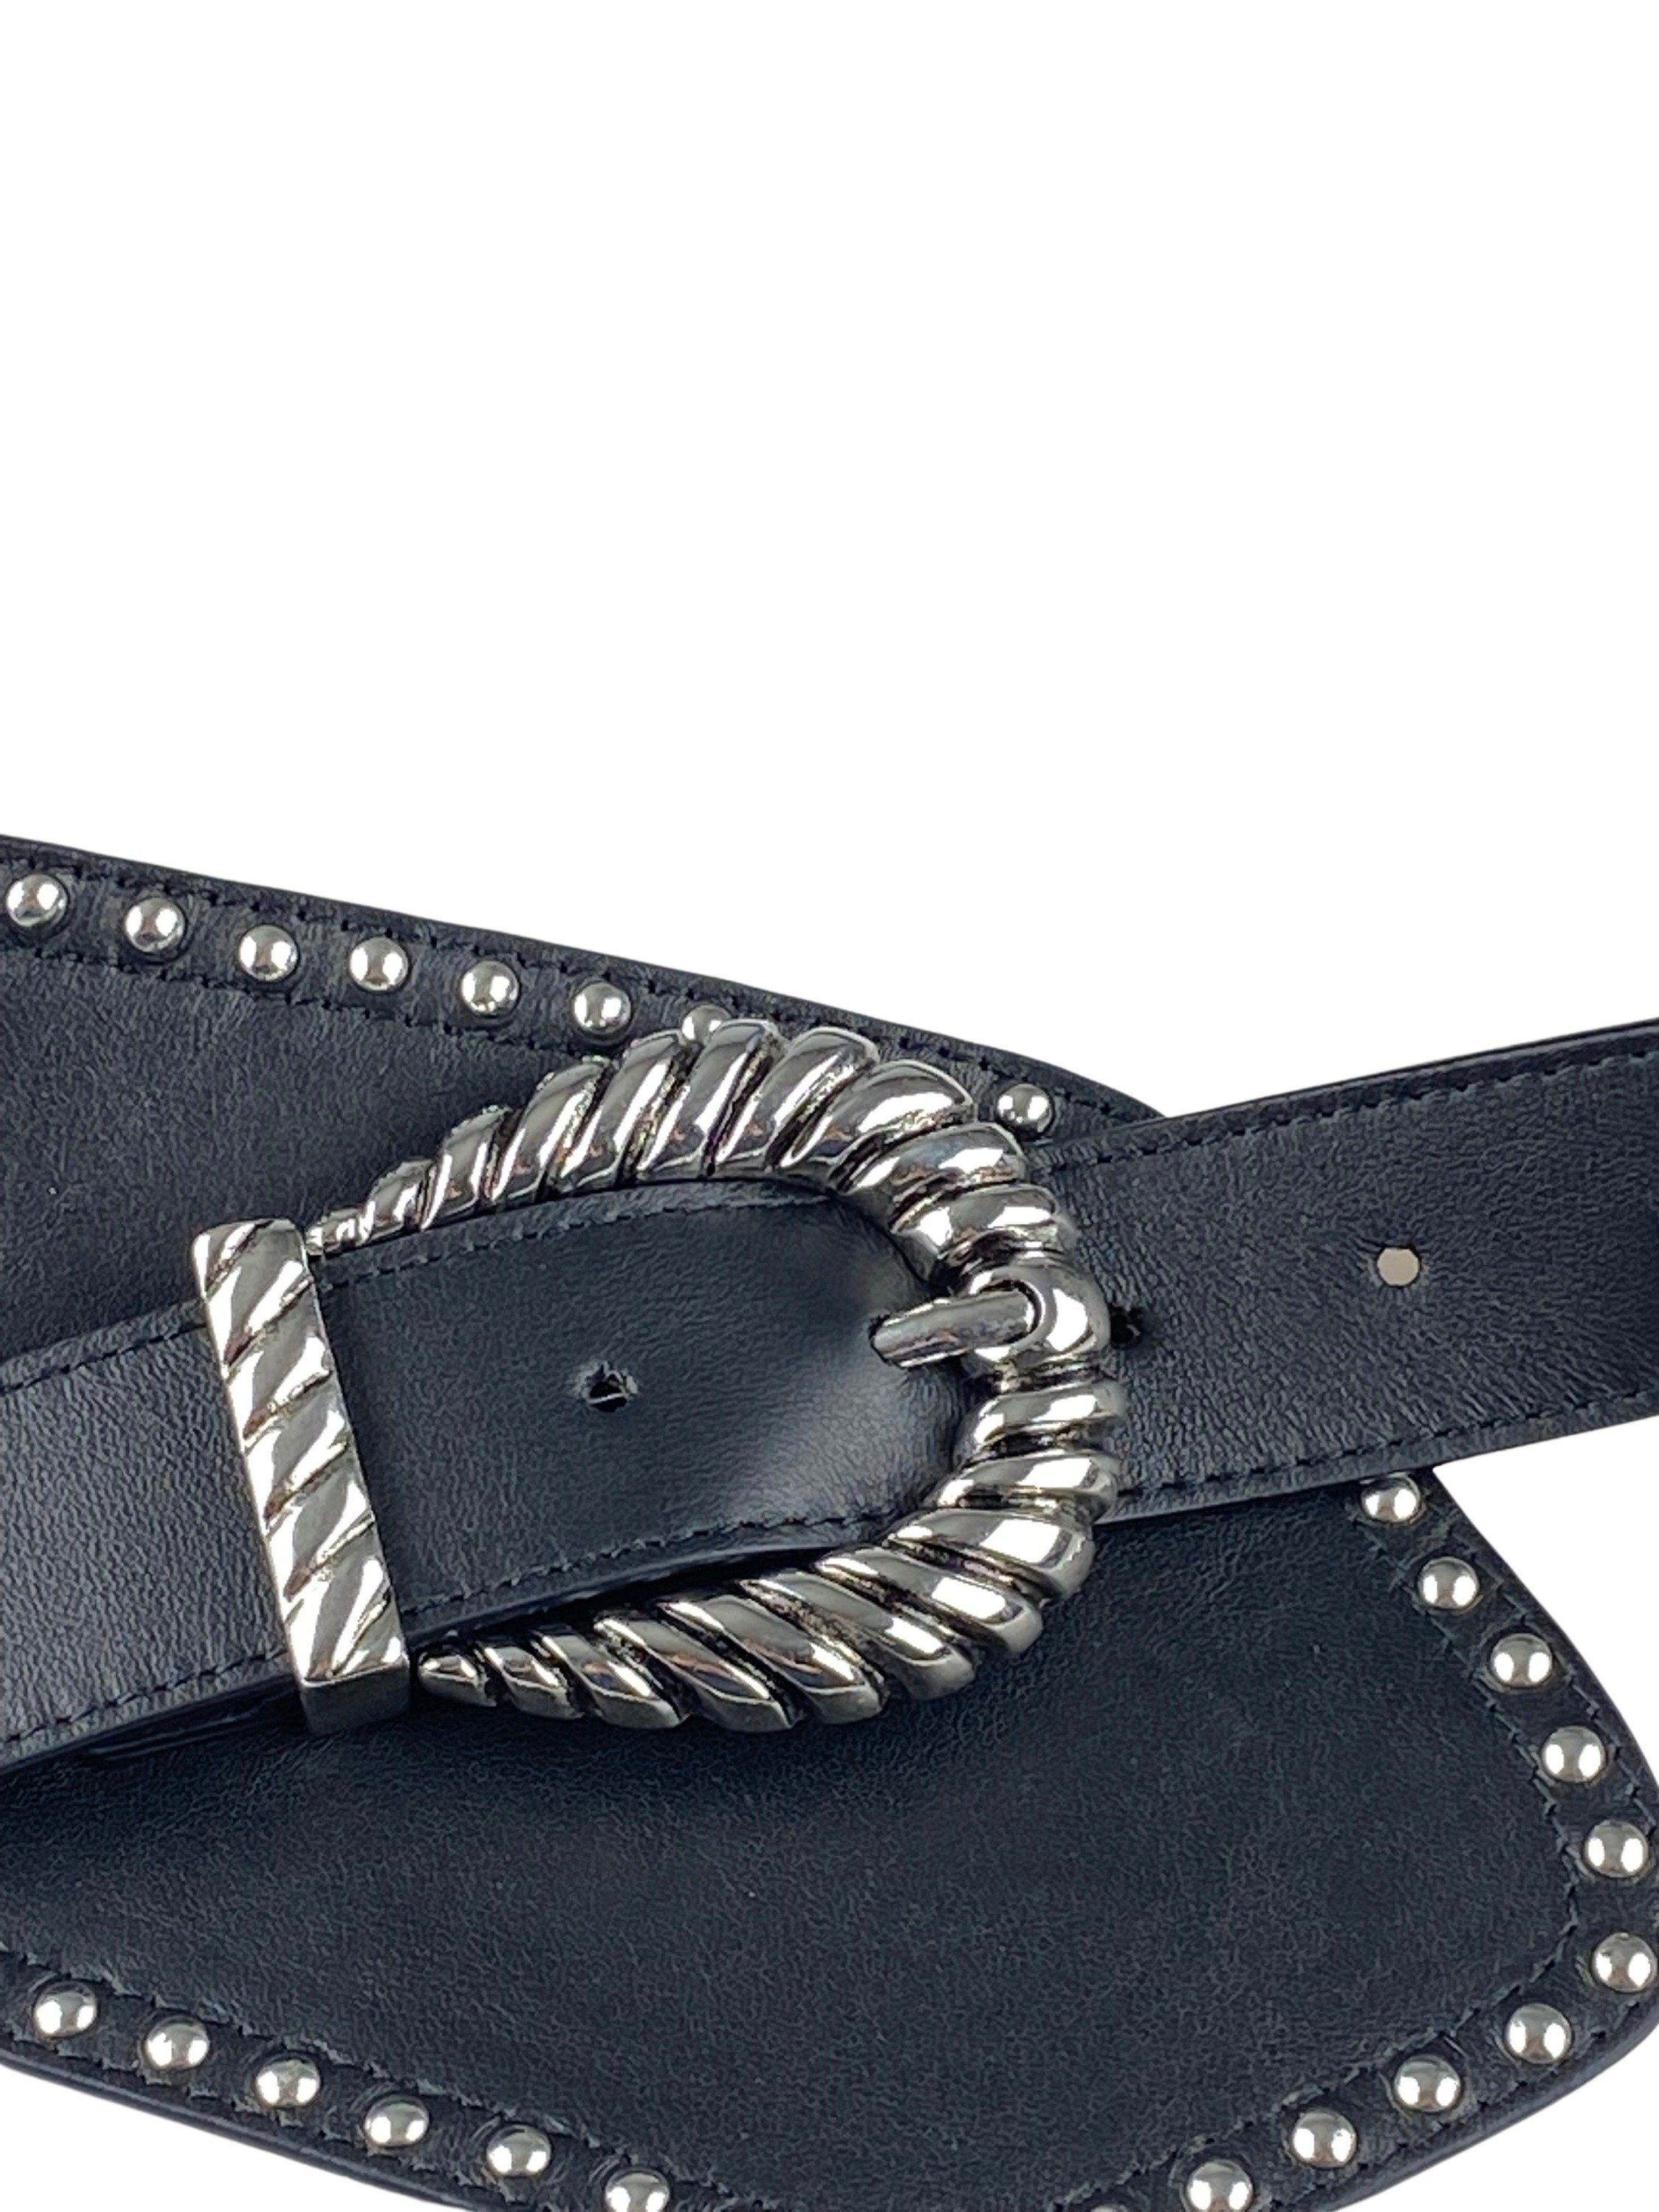 Western schwarz Leder aus handgefertigt COLLEZIONE Ledergürtel ALESSANDRO